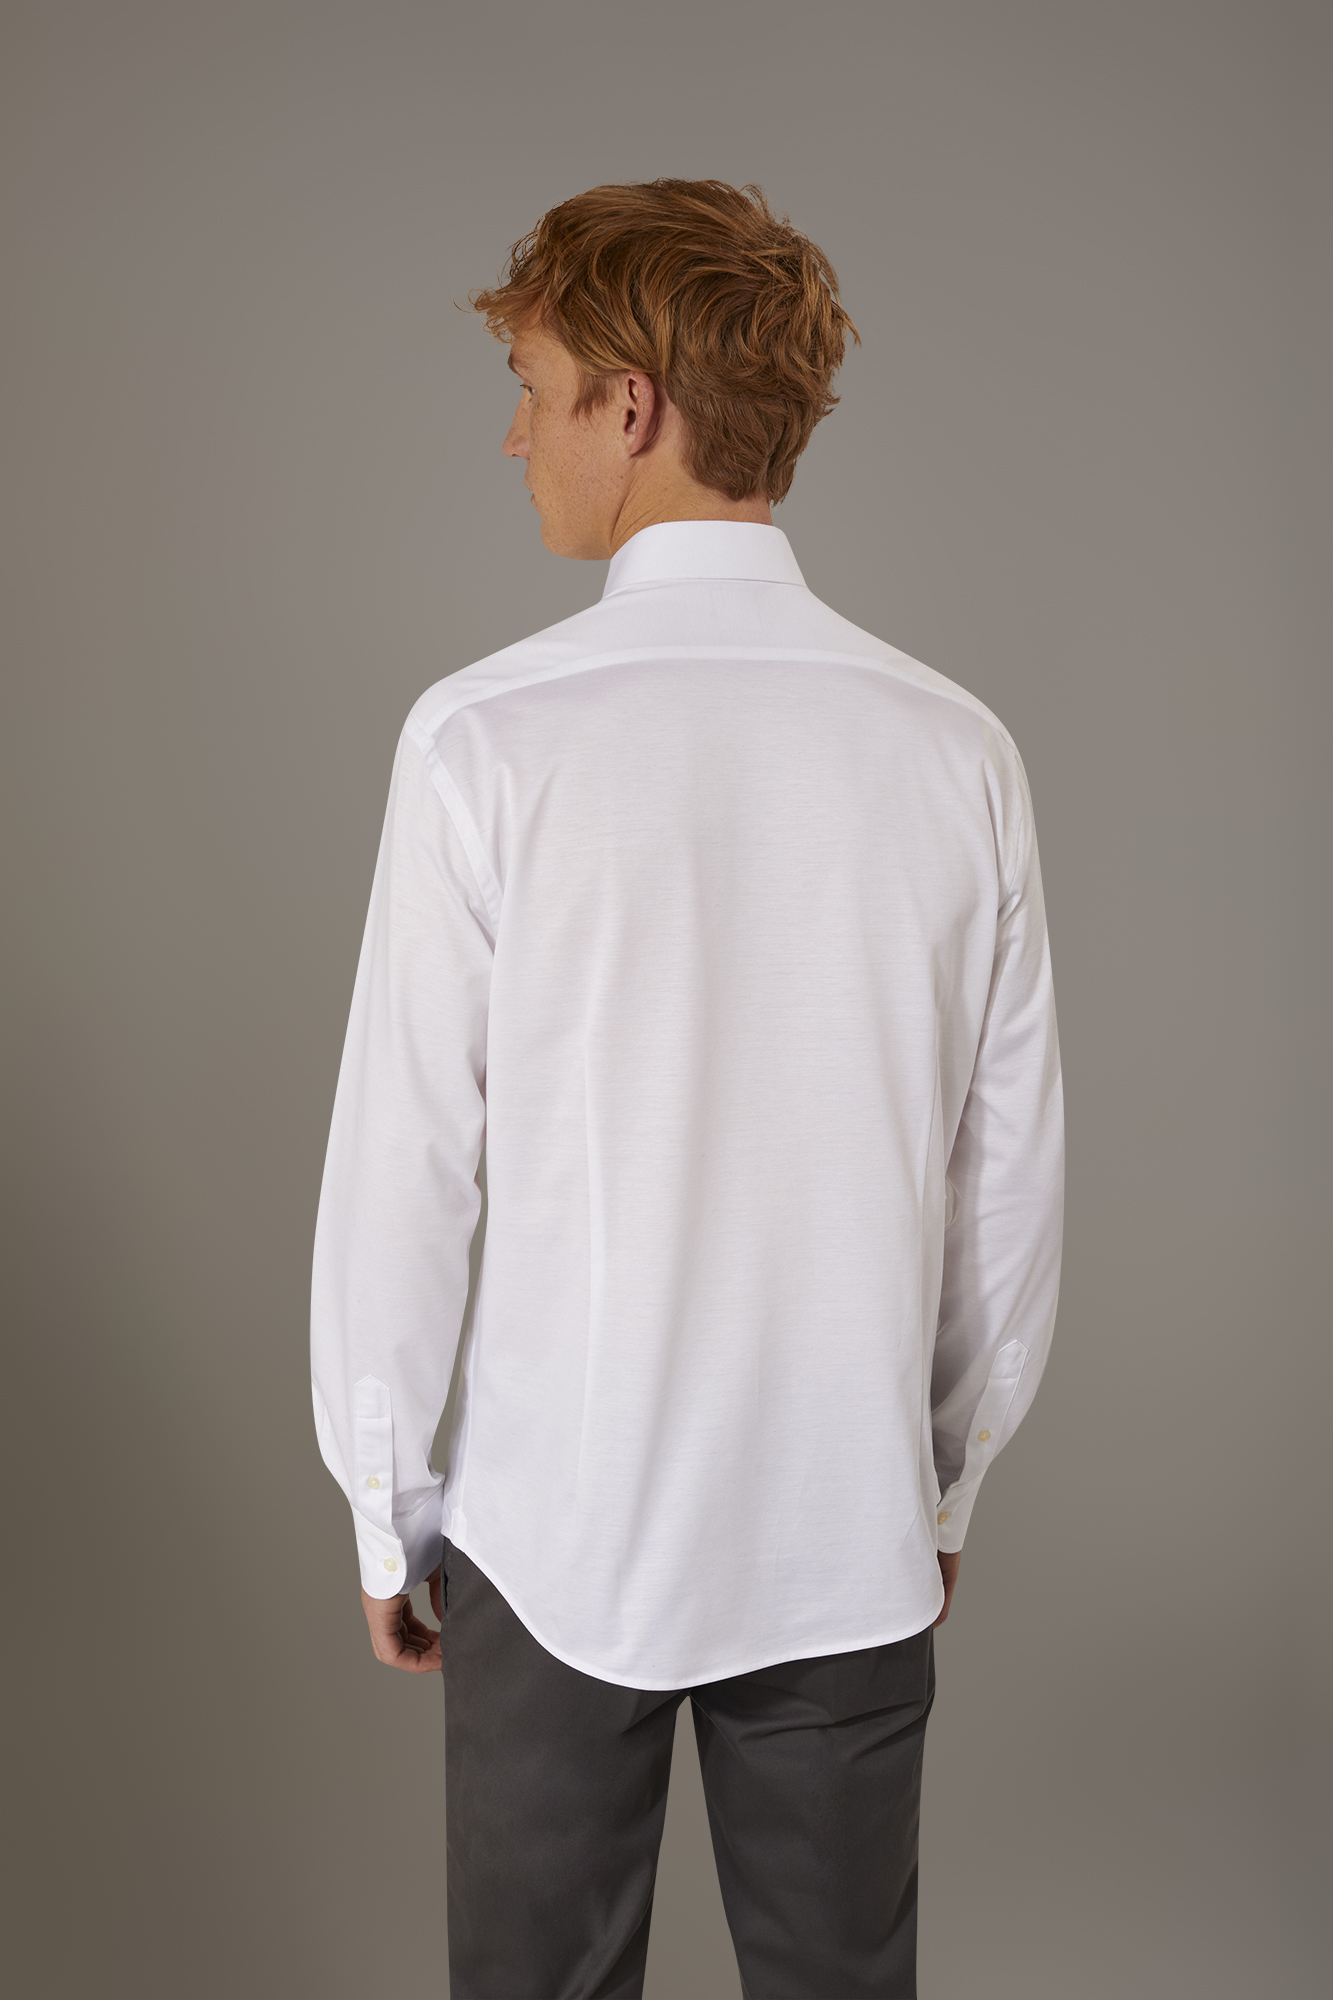 Camicia classica lavata con collo francese comfort fit tessuto jersey image number null